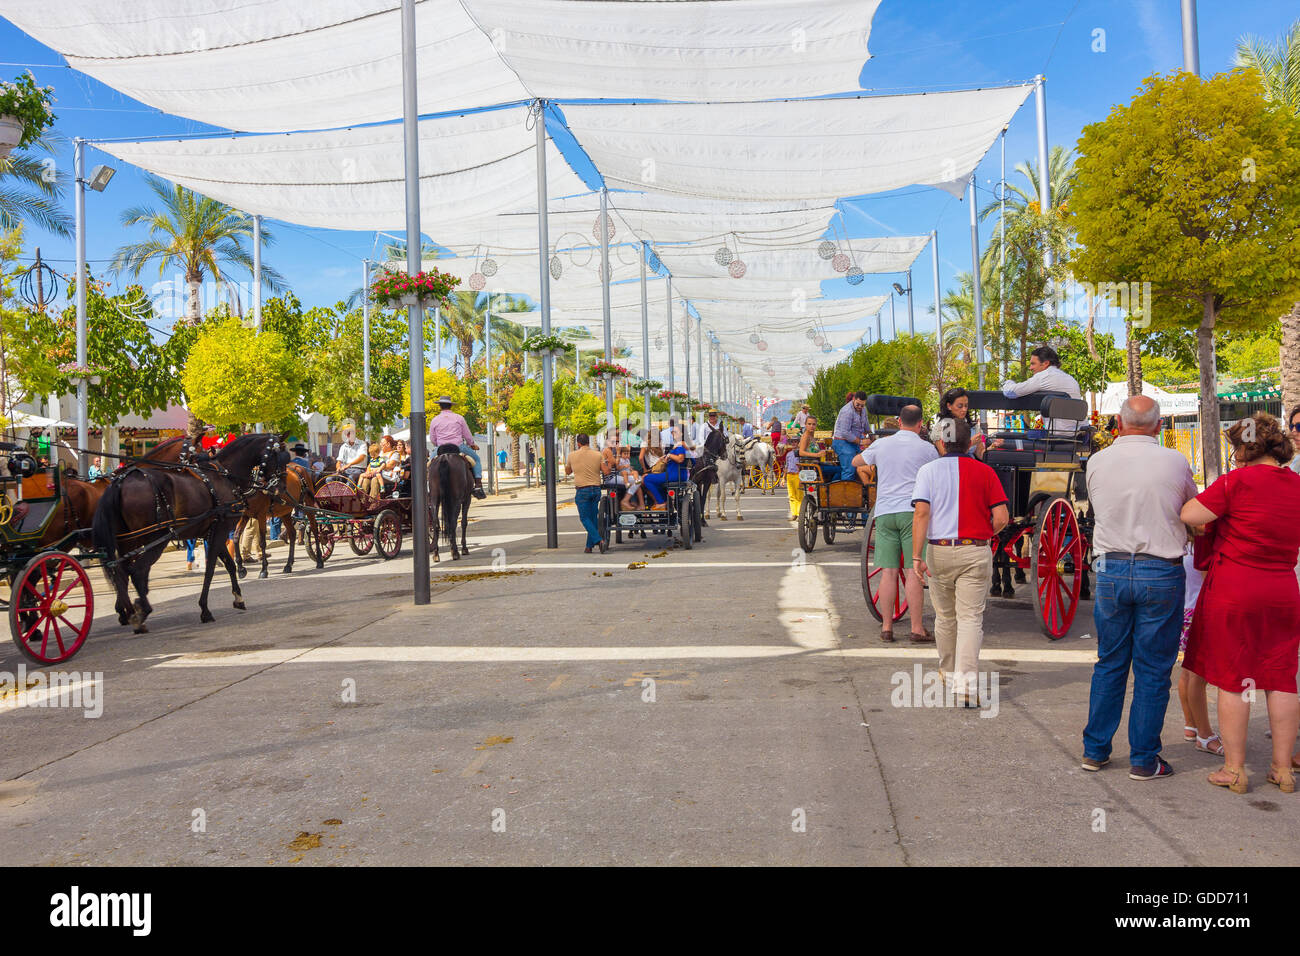 ANDUJAR, ESPAGNE - septembre 6 : tentes et parasols pour éviter le soleil au cours de la célèbre foire du cheval andalou, 6 septembre, 201 Banque D'Images